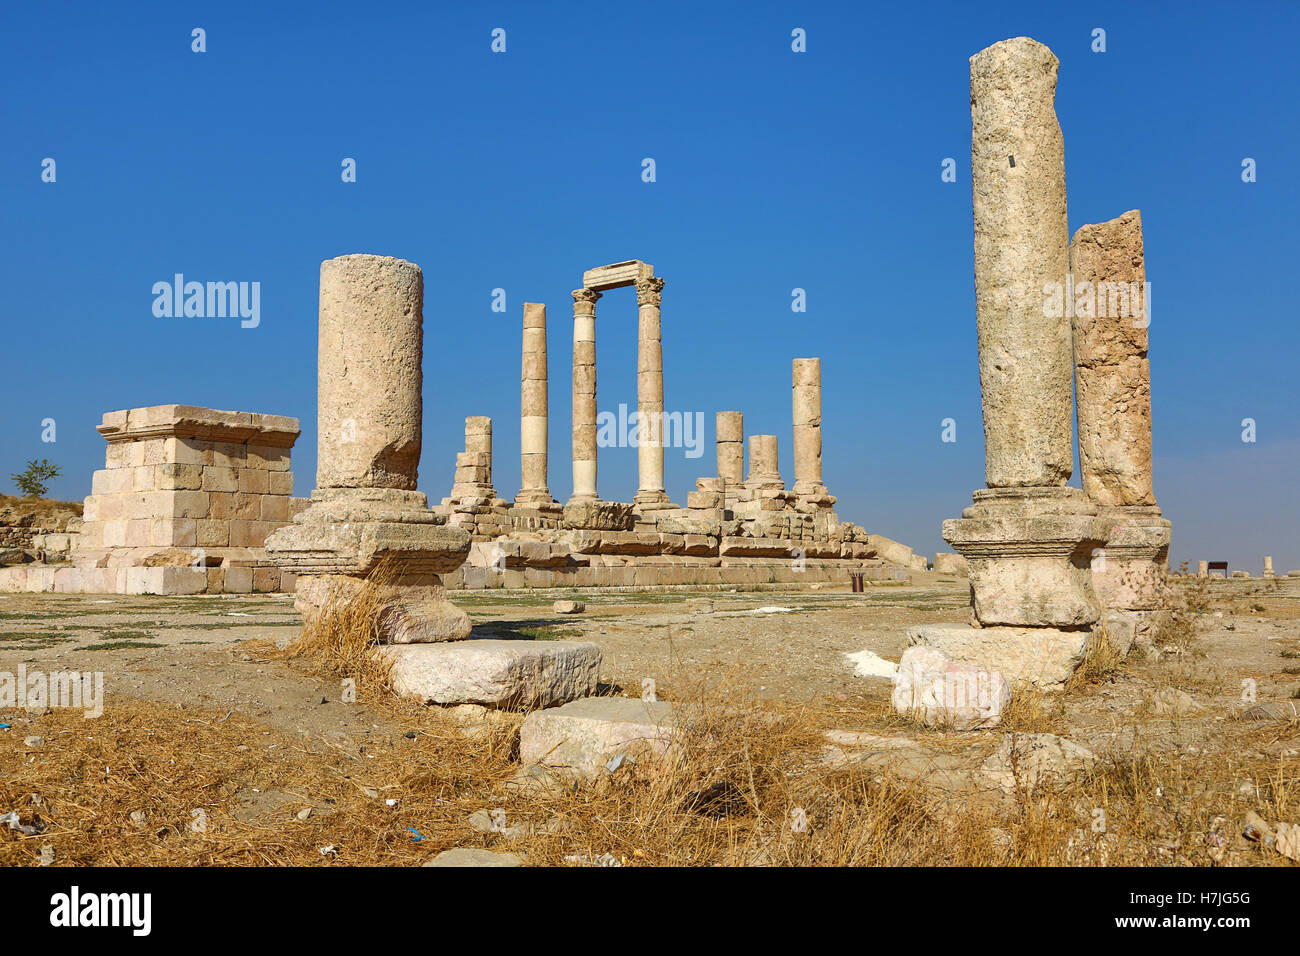 The Temple of Hercules in the Amman Citadel, Jabal Al-Qala, Amman, Jordan Stock Photo